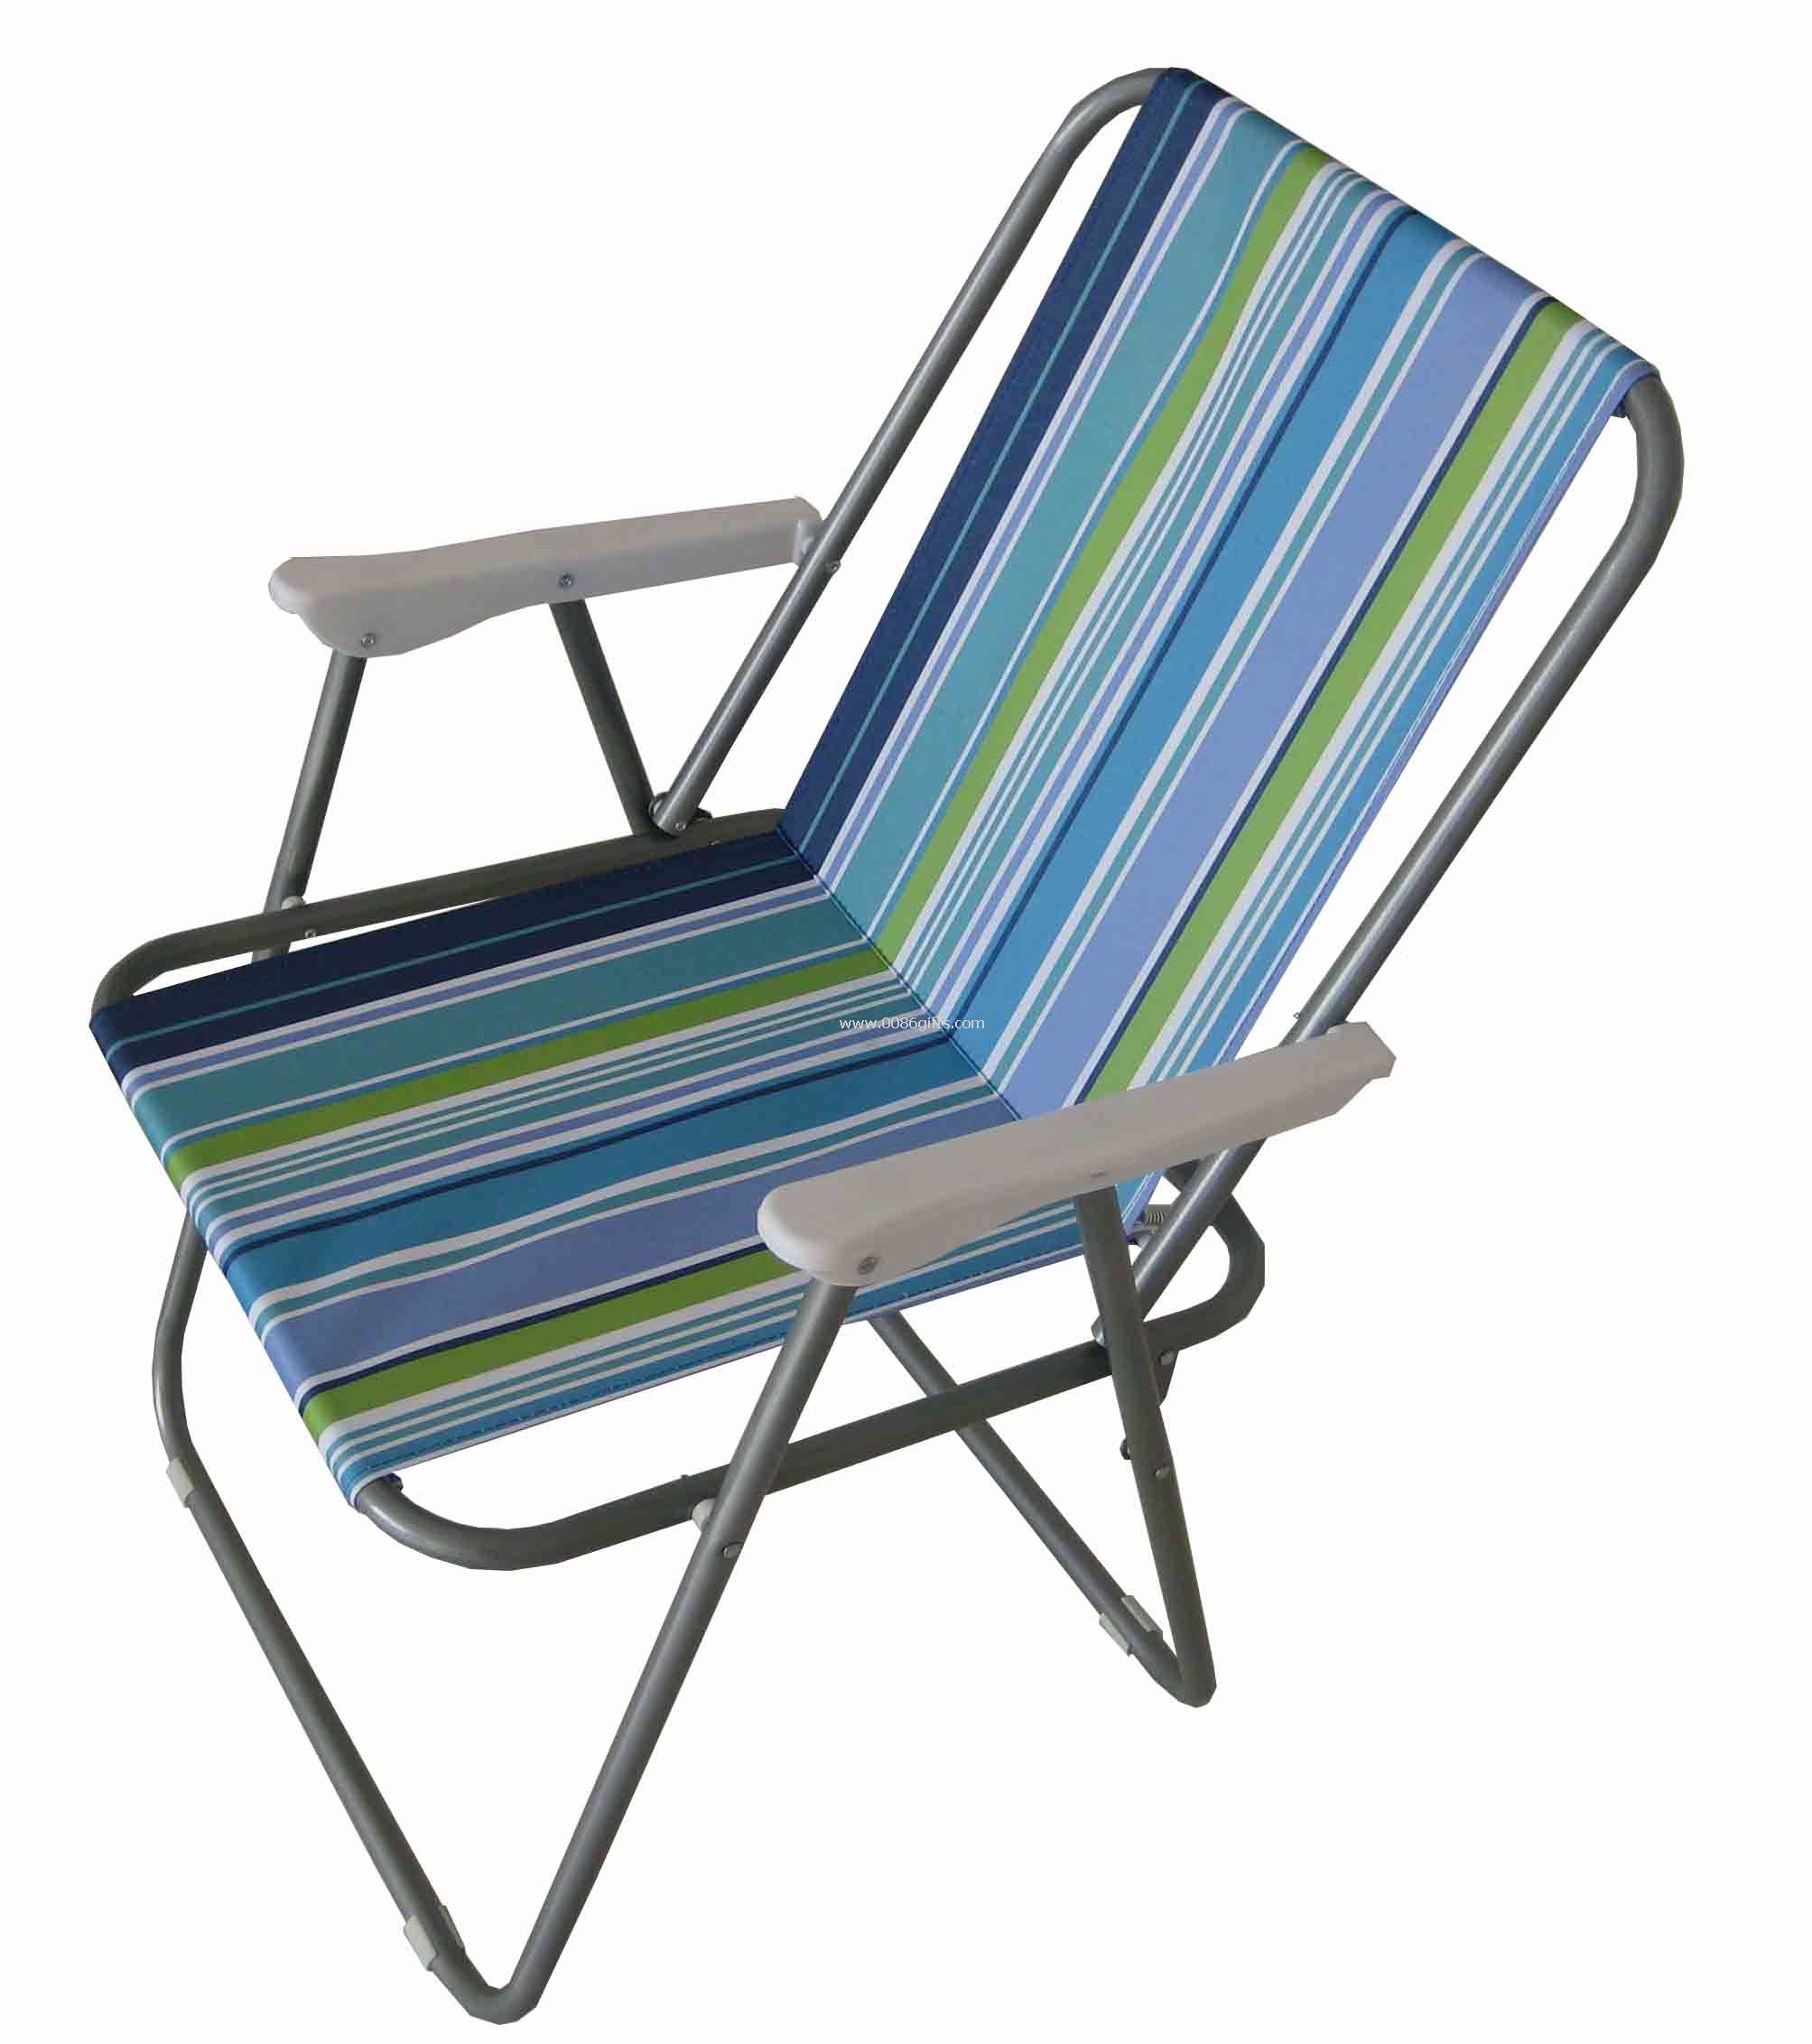 600D Folding chair